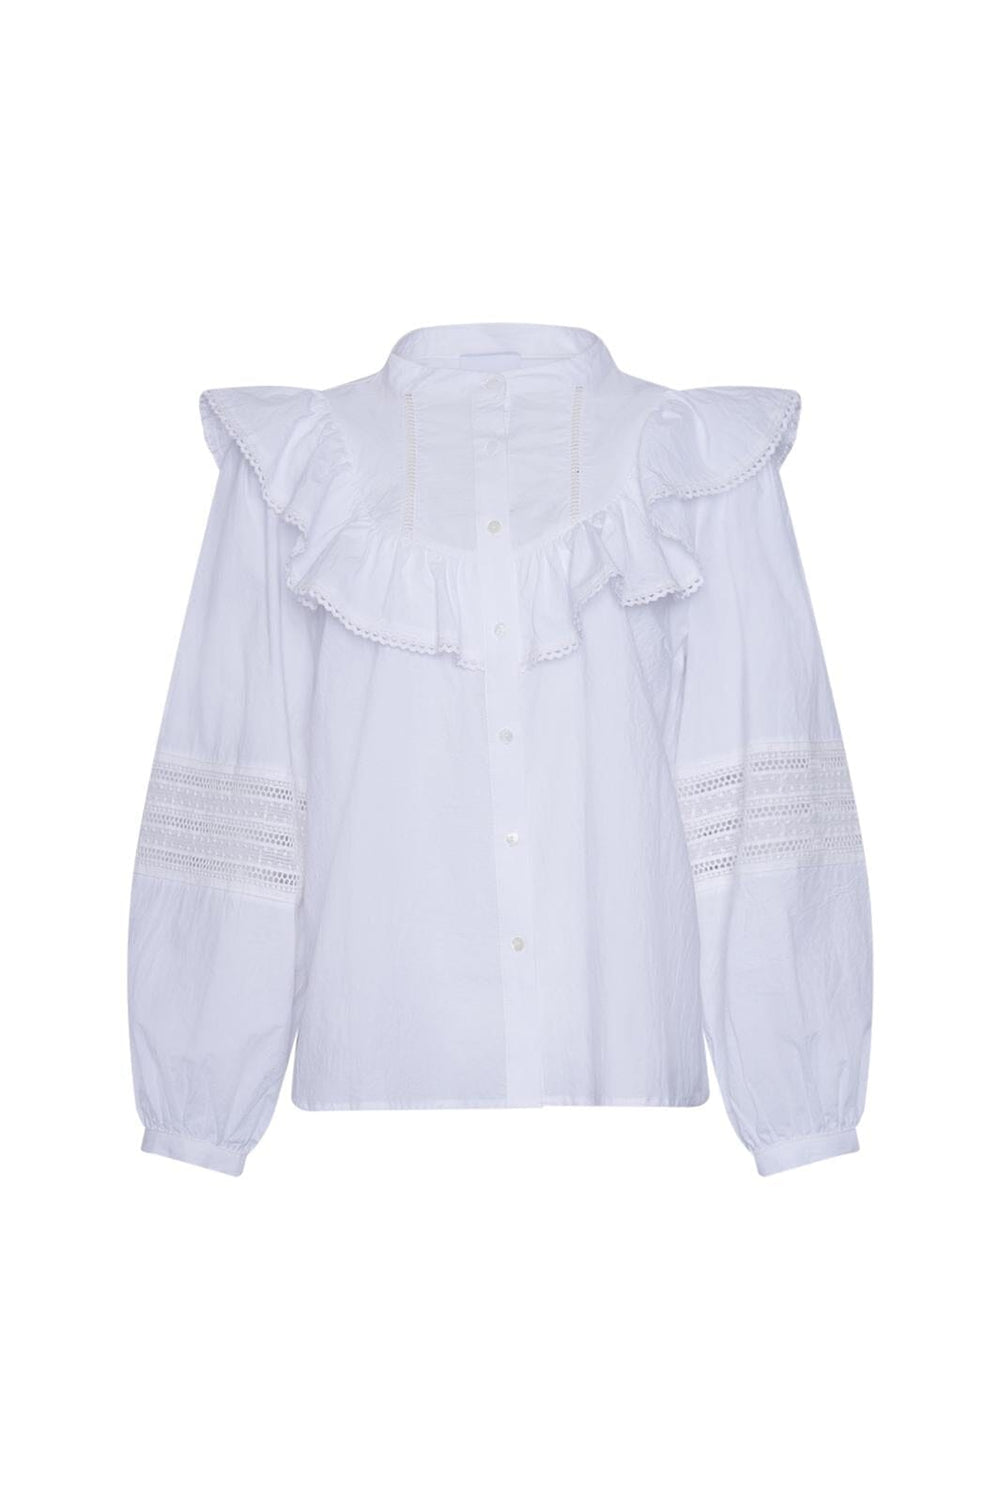 Noella - Jovanny Shirt - 028 White